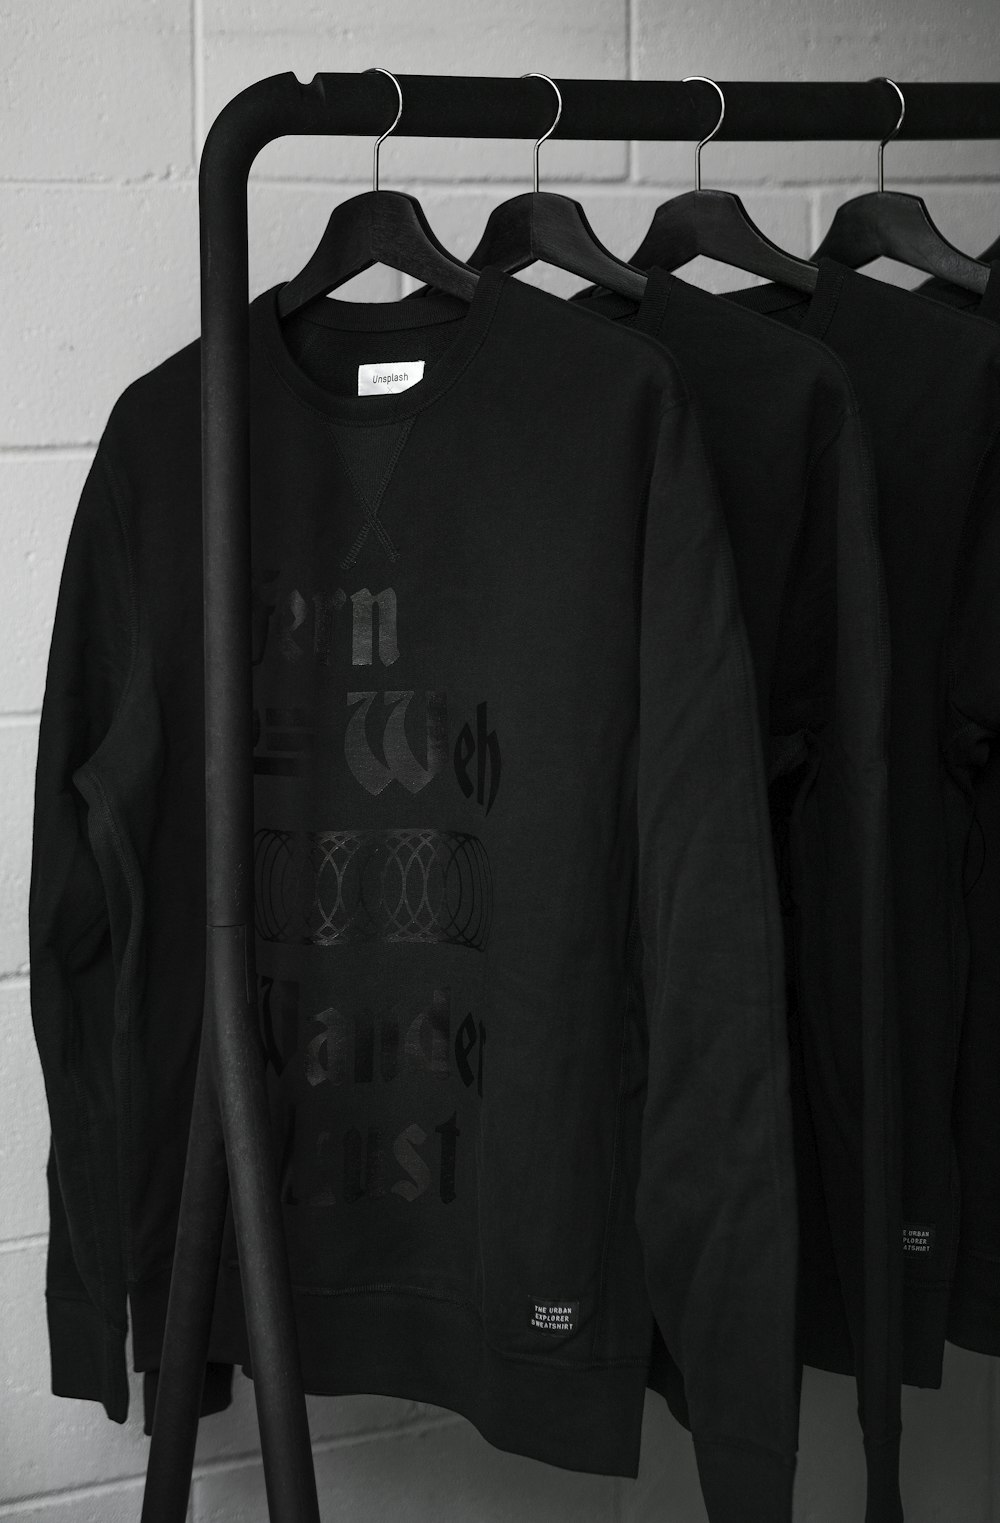 sweat-shirts noirs sur cintres en plastique